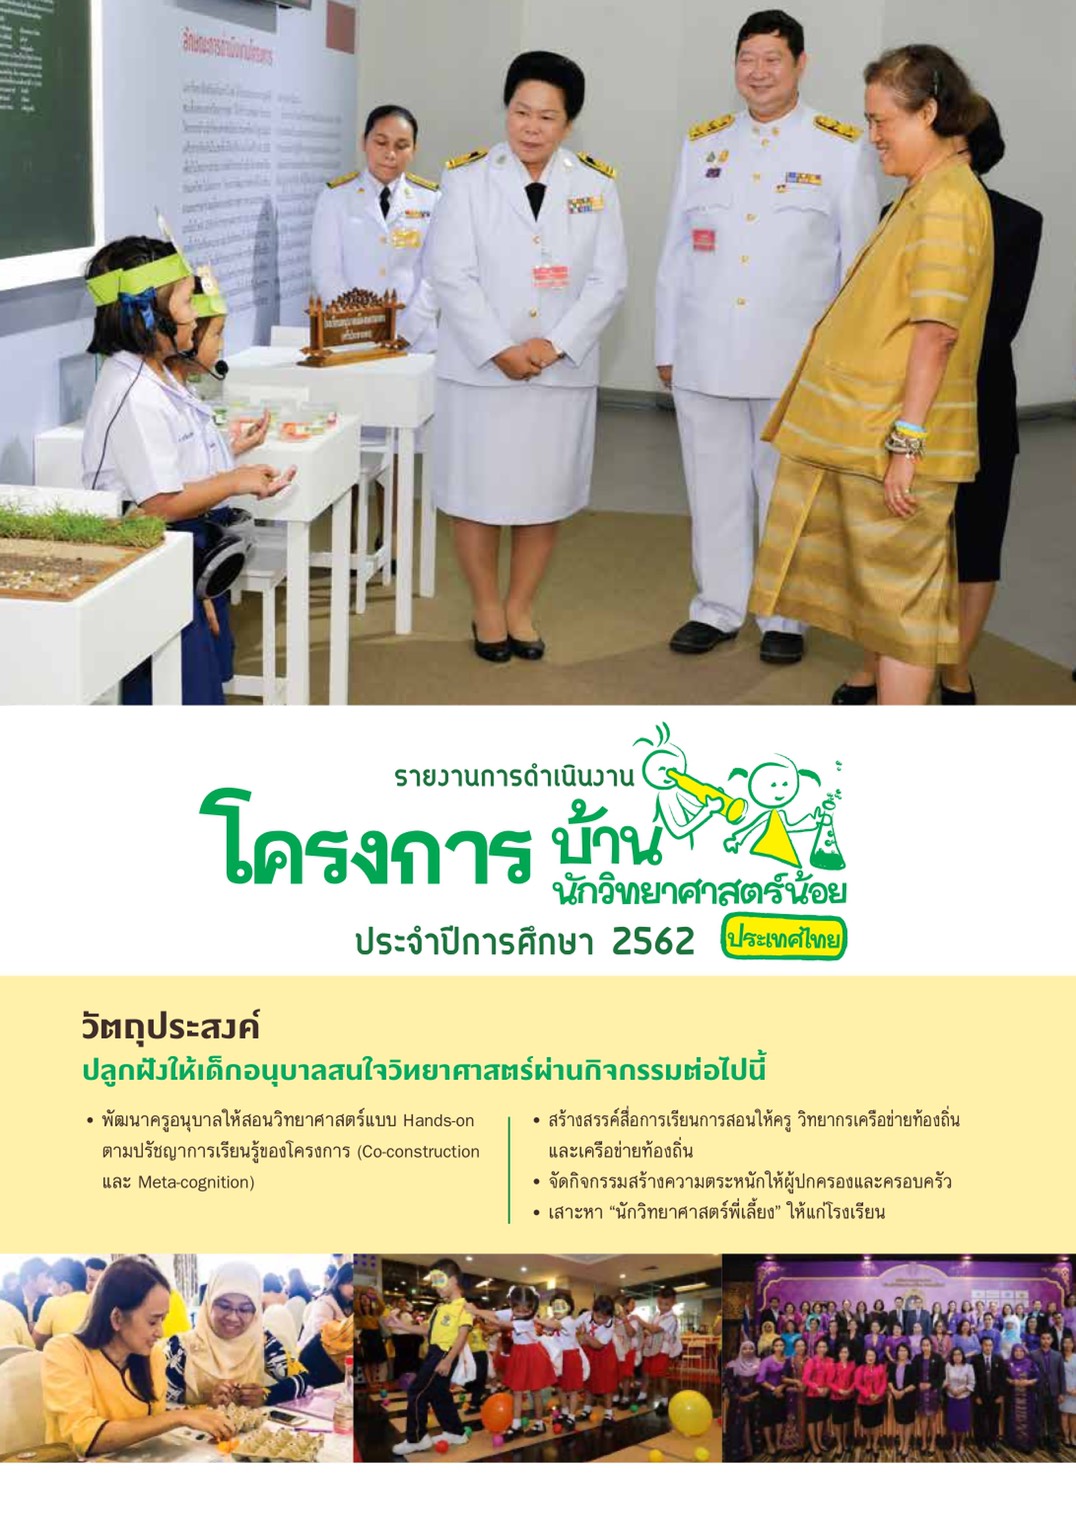 รายงานสรุปโครงการบ้านนักวิทยาศาสตร์น้อย ประเทศไทย ประจำปีการศึกษา 2562